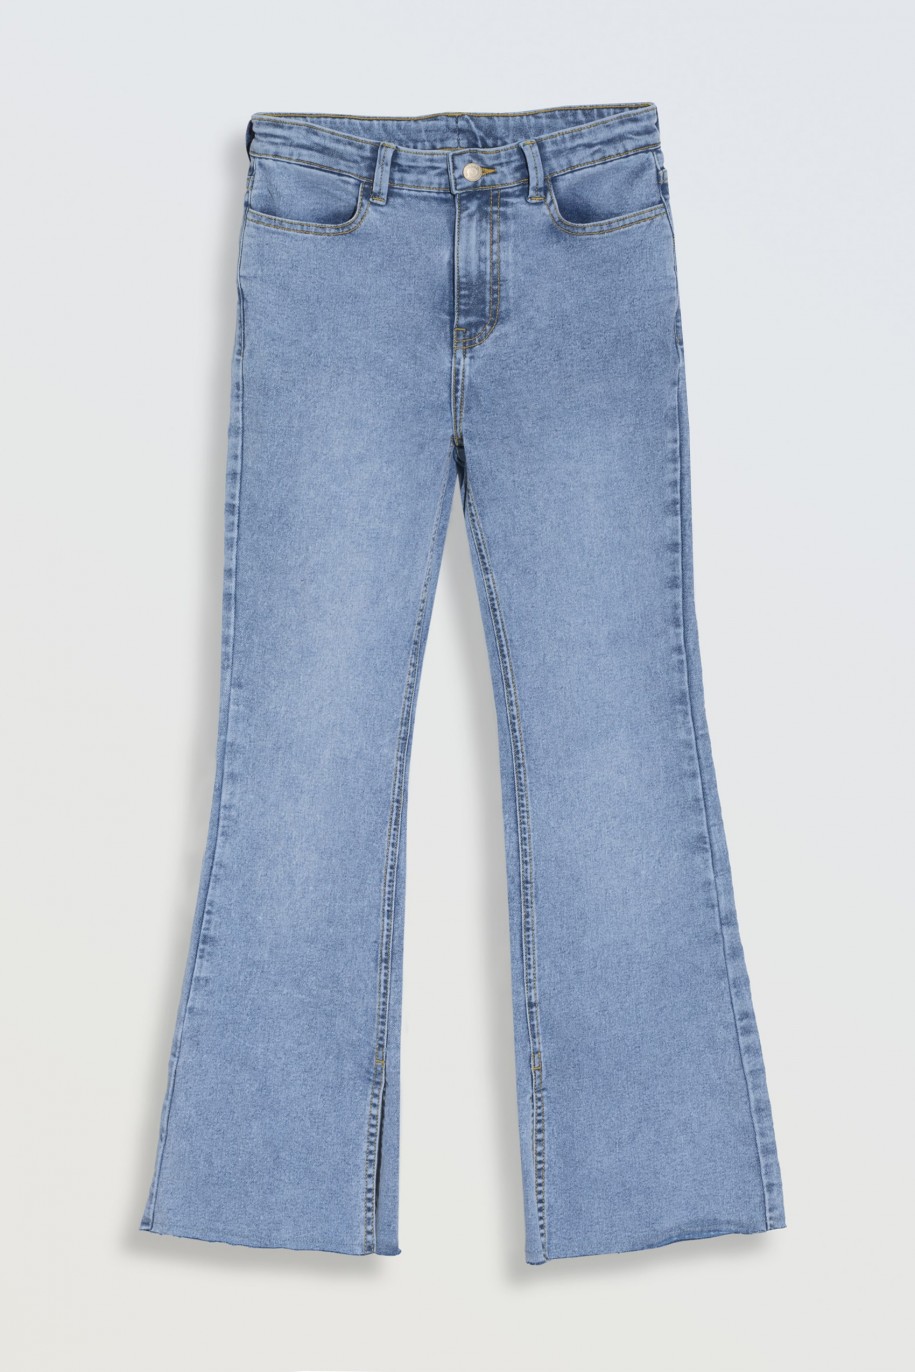 Niebieskie jeansowe dzwony z rozcięciami na nogawkach - 46559